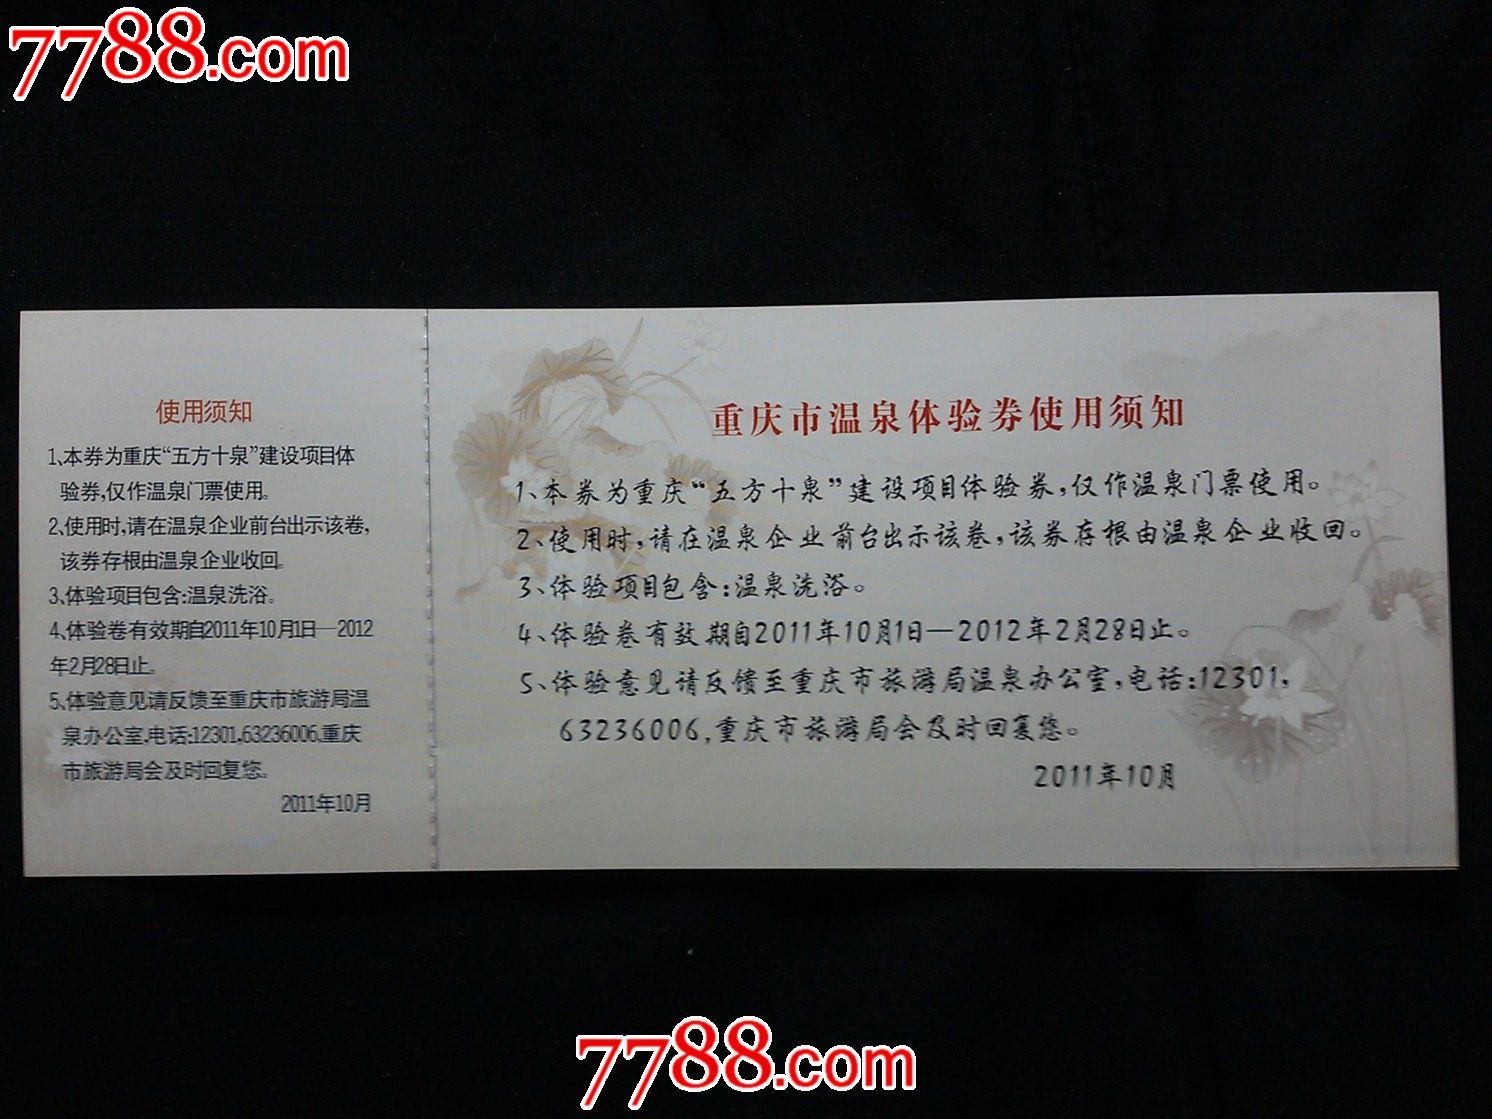 旅游门票:重庆市温泉体验券【2012年】!